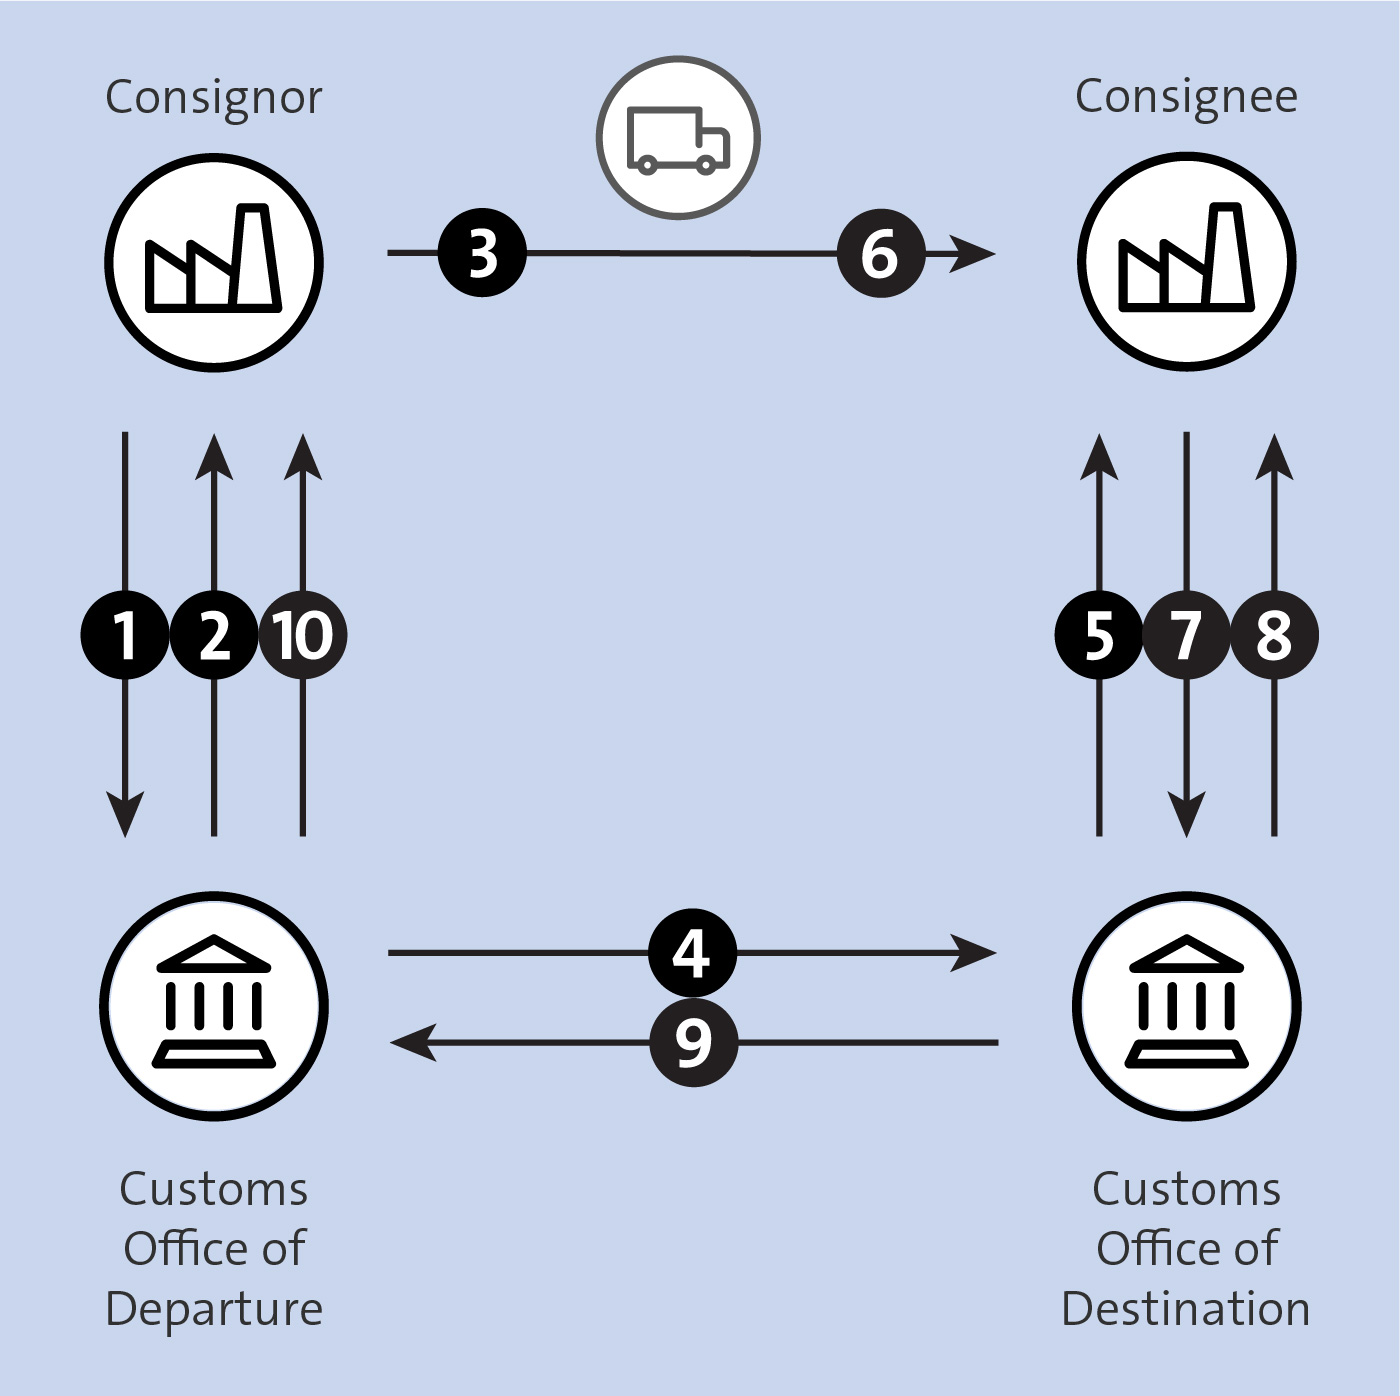 EMCS Process Flow for Consignor 